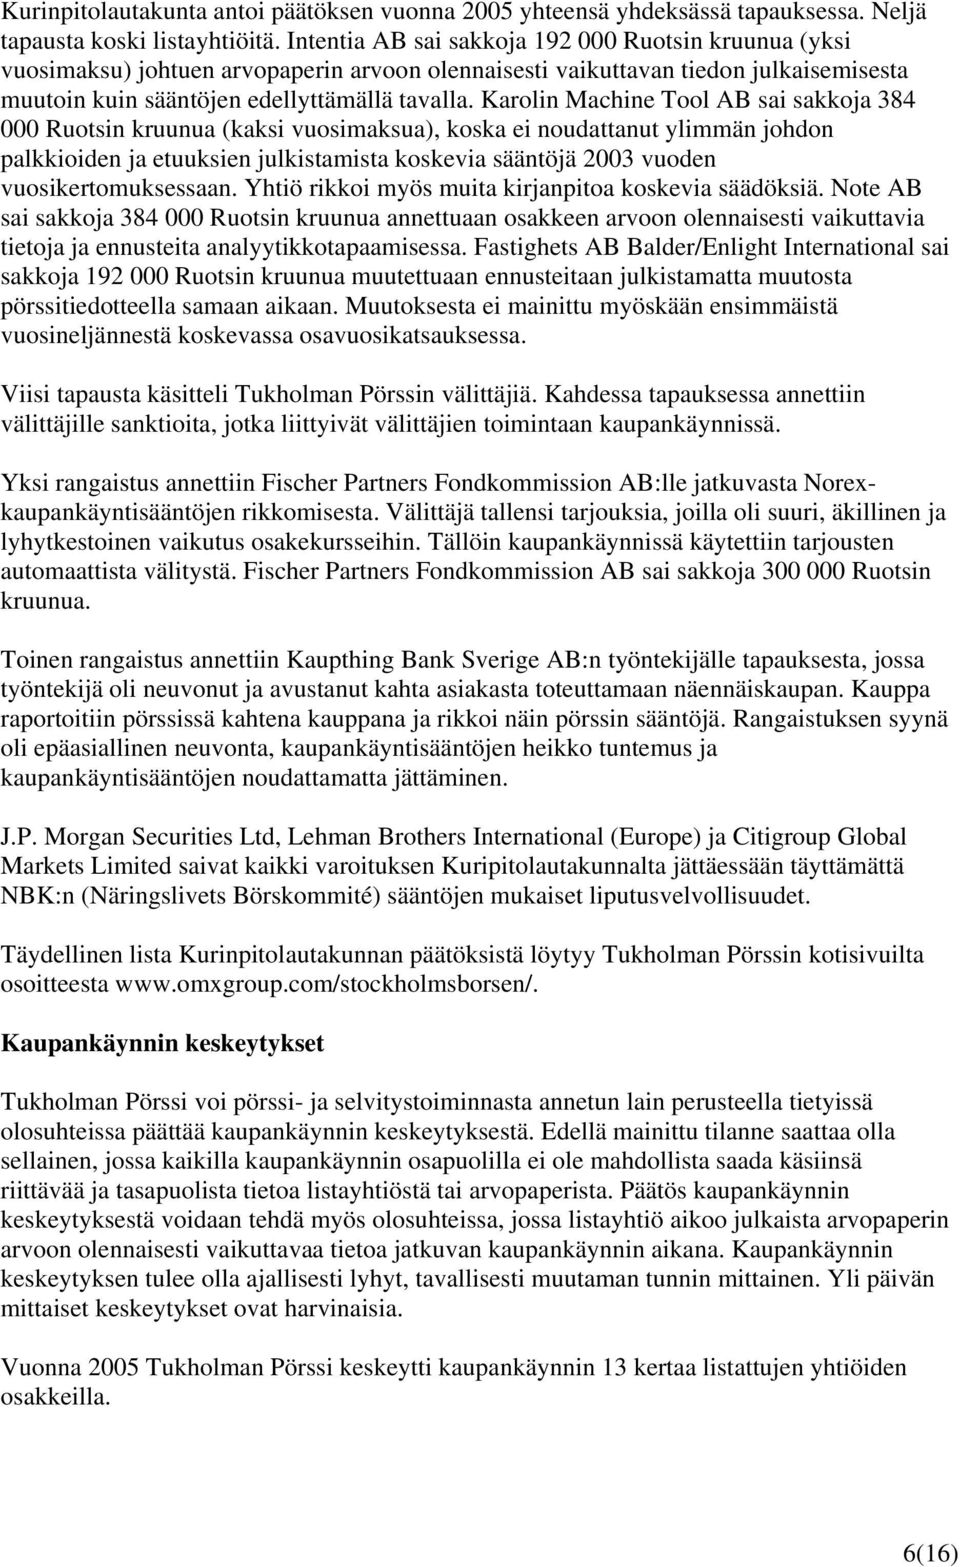 Karolin Machine Tool AB sai sakkoja 384 000 Ruotsin kruunua (kaksi vuosimaksua), koska ei noudattanut ylimmän johdon palkkioiden ja etuuksien julkistamista koskevia sääntöjä 2003 vuoden